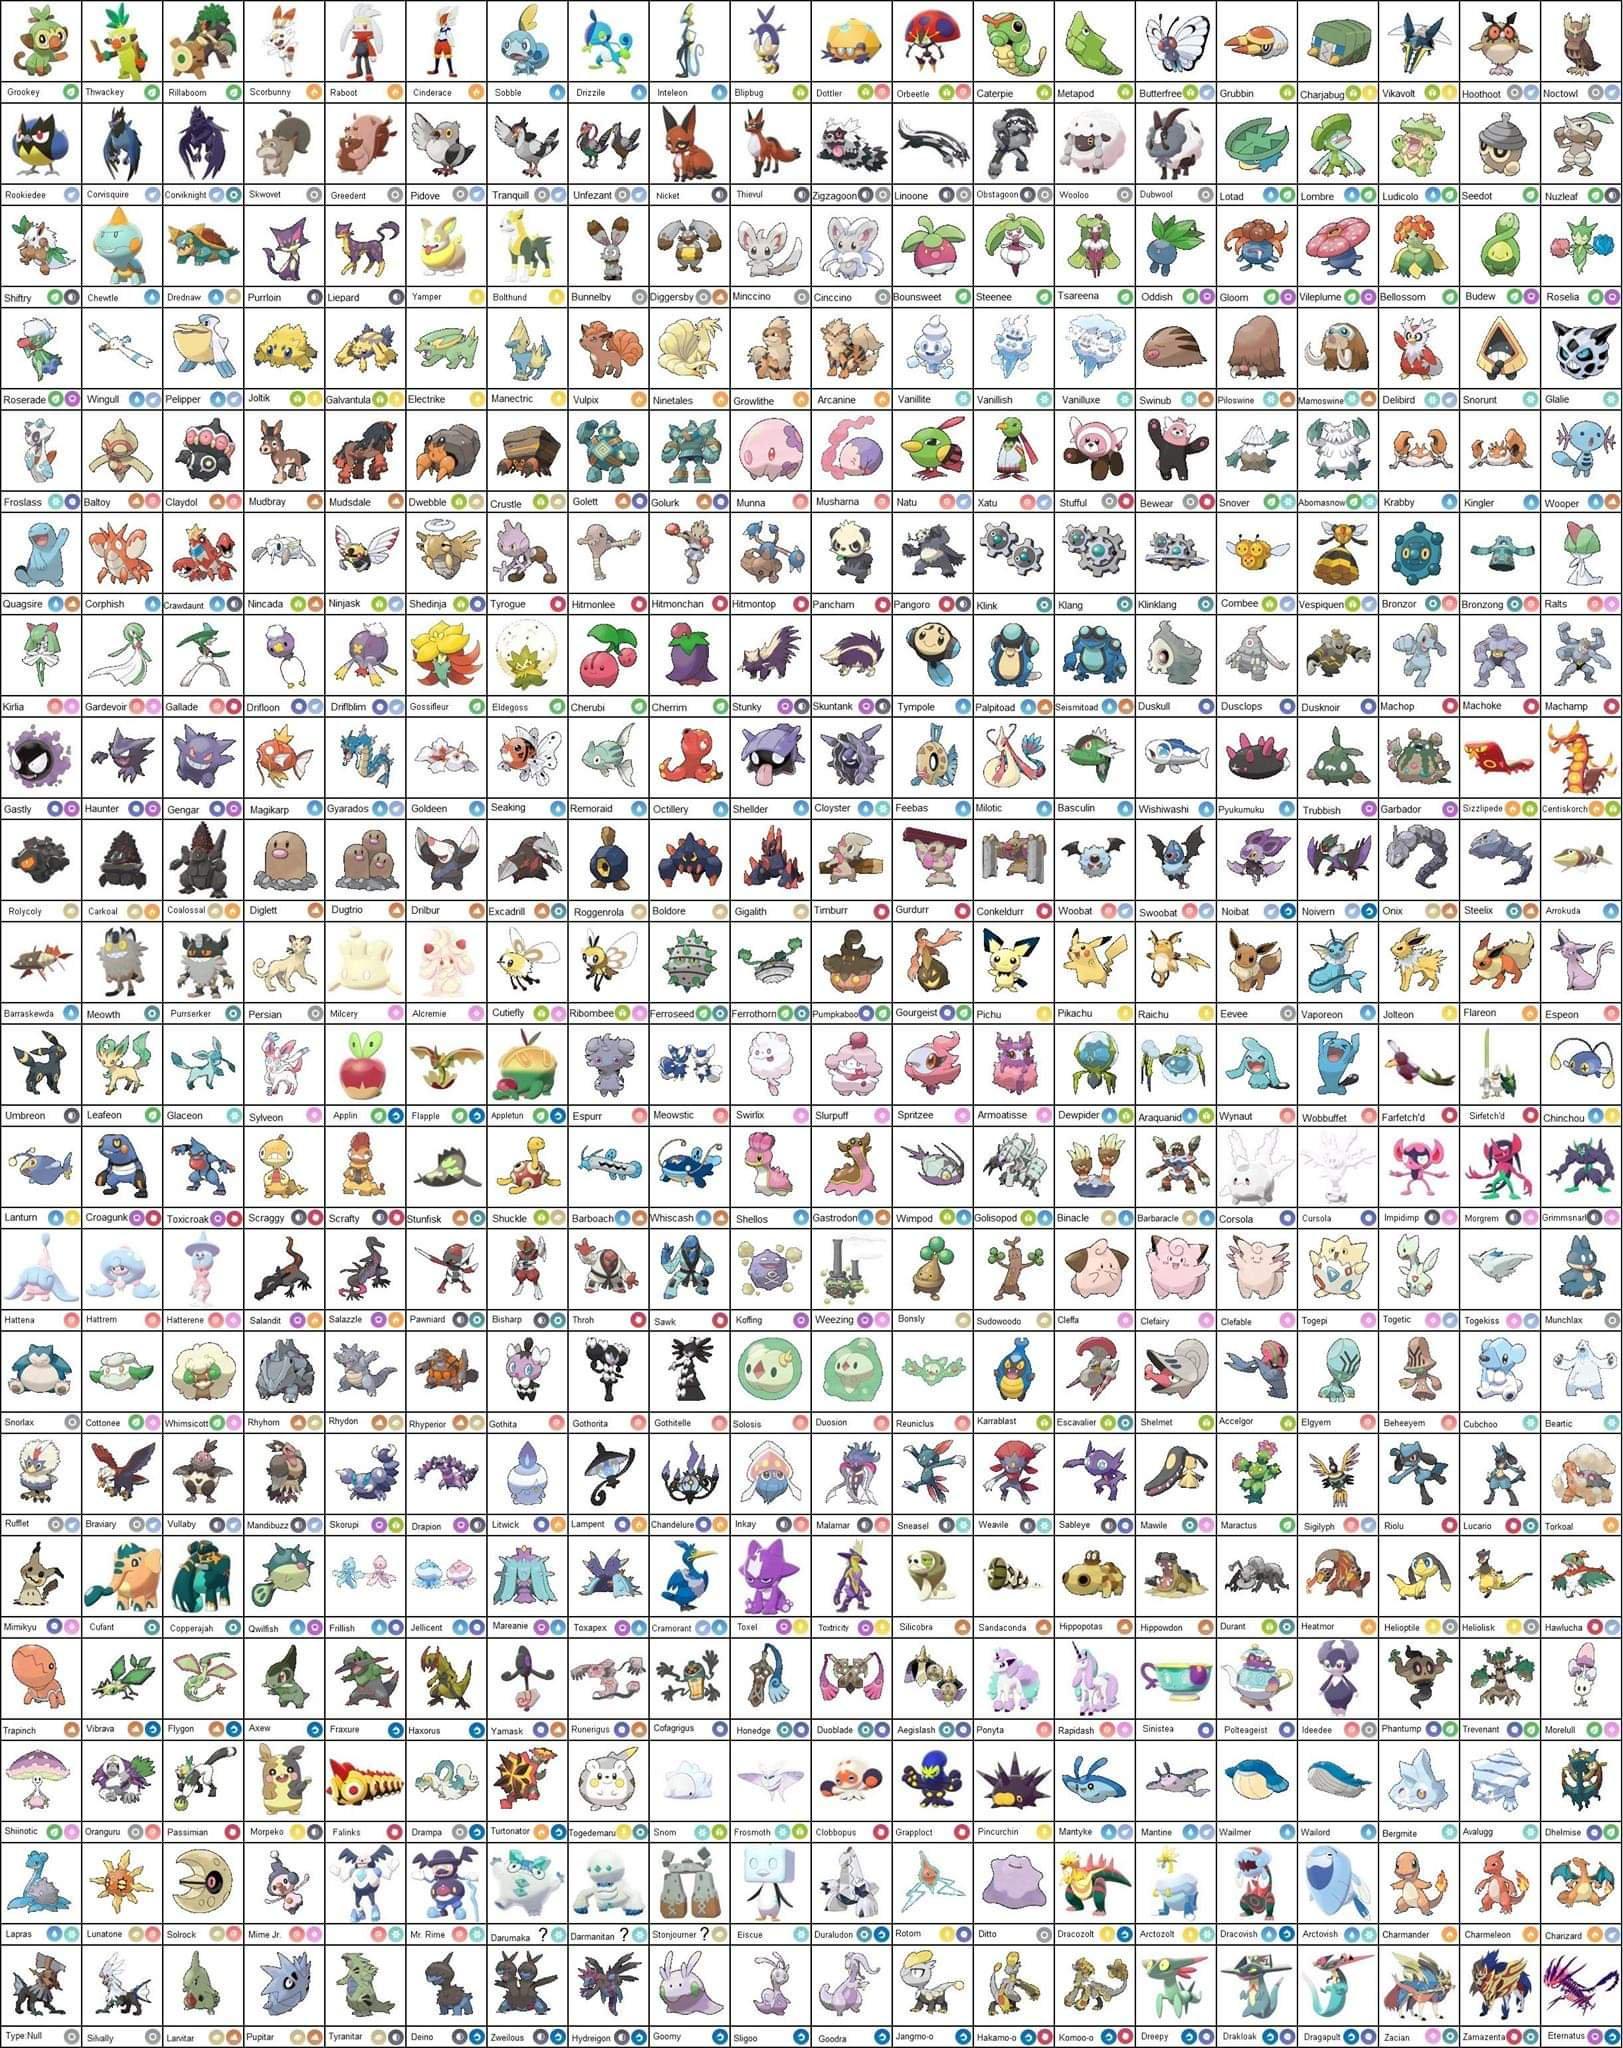 Full Galarian Pokedex (now with icons). Pokémon Sword